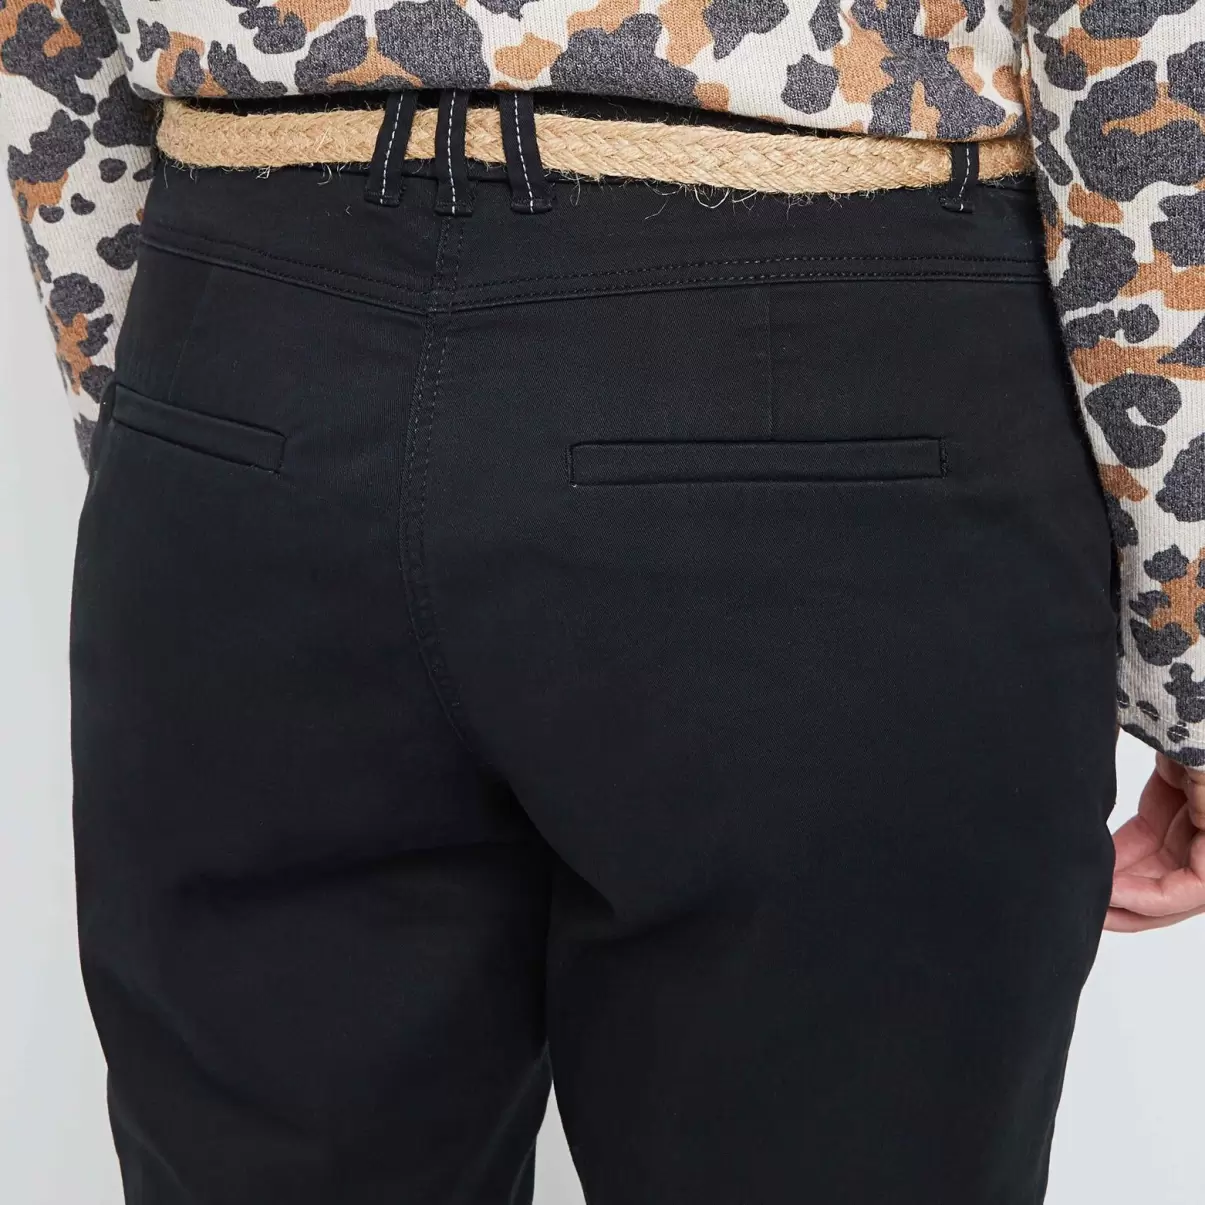 Sortie Grain De Malic Pantalons Pantalon Chino Avec Ceinture Femme Noir Femme - 3